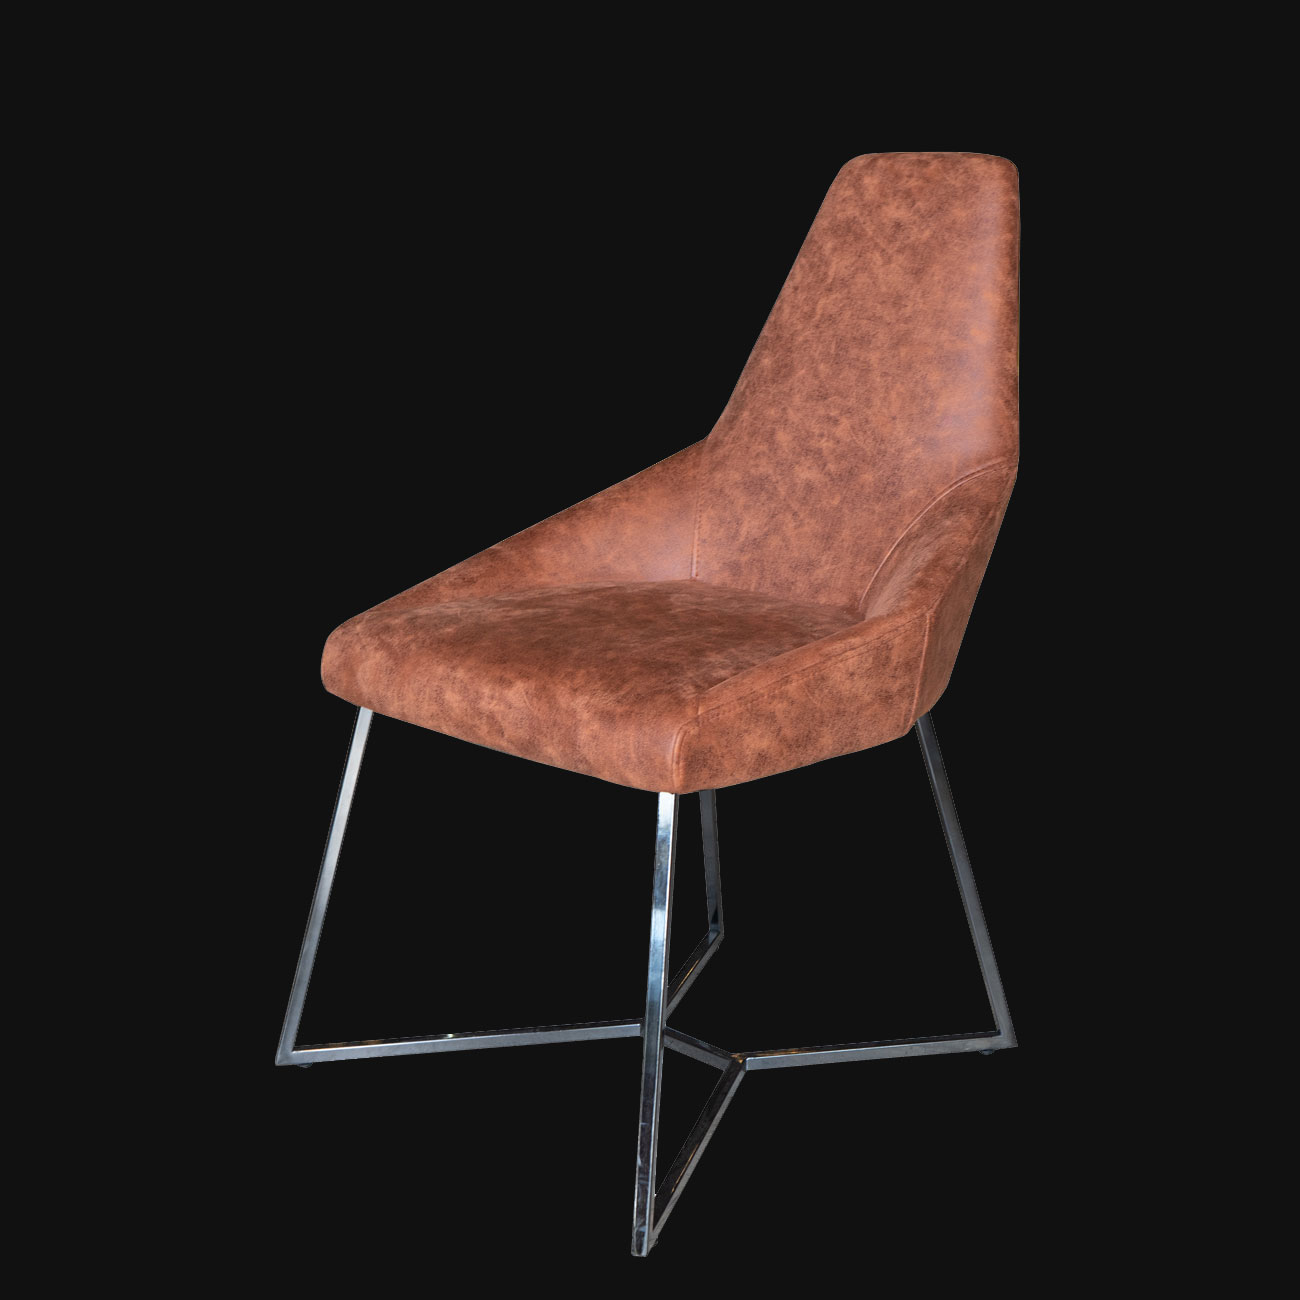 modern cafe sandalyesi, cafe sandalyesi modelleri, sandalye tasarımları